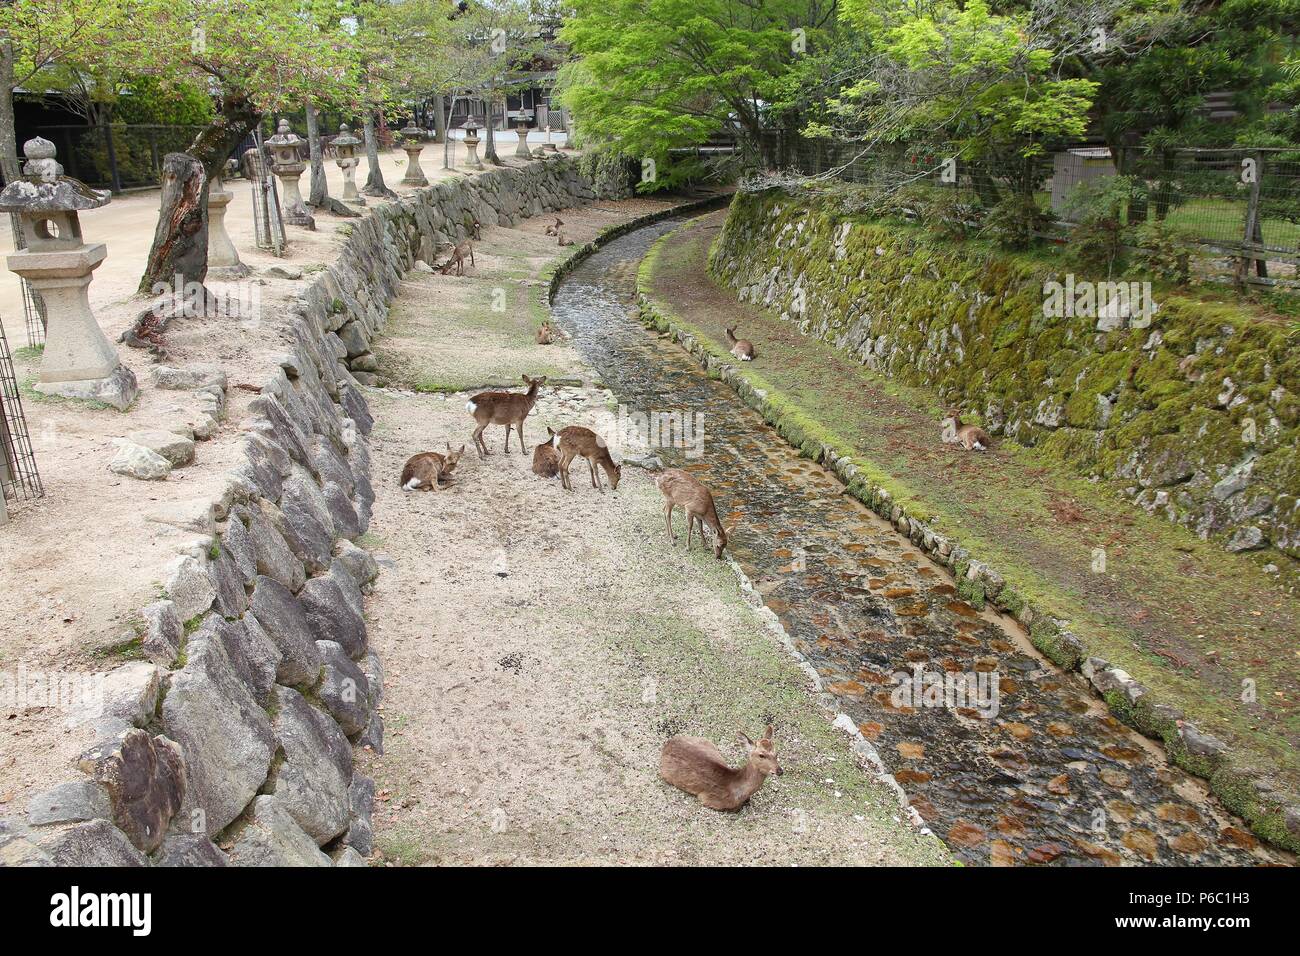 Hirsch von Miyajima (auch Itsukushima bekannt) - Zahmes Rotwild in Japan. Stockfoto